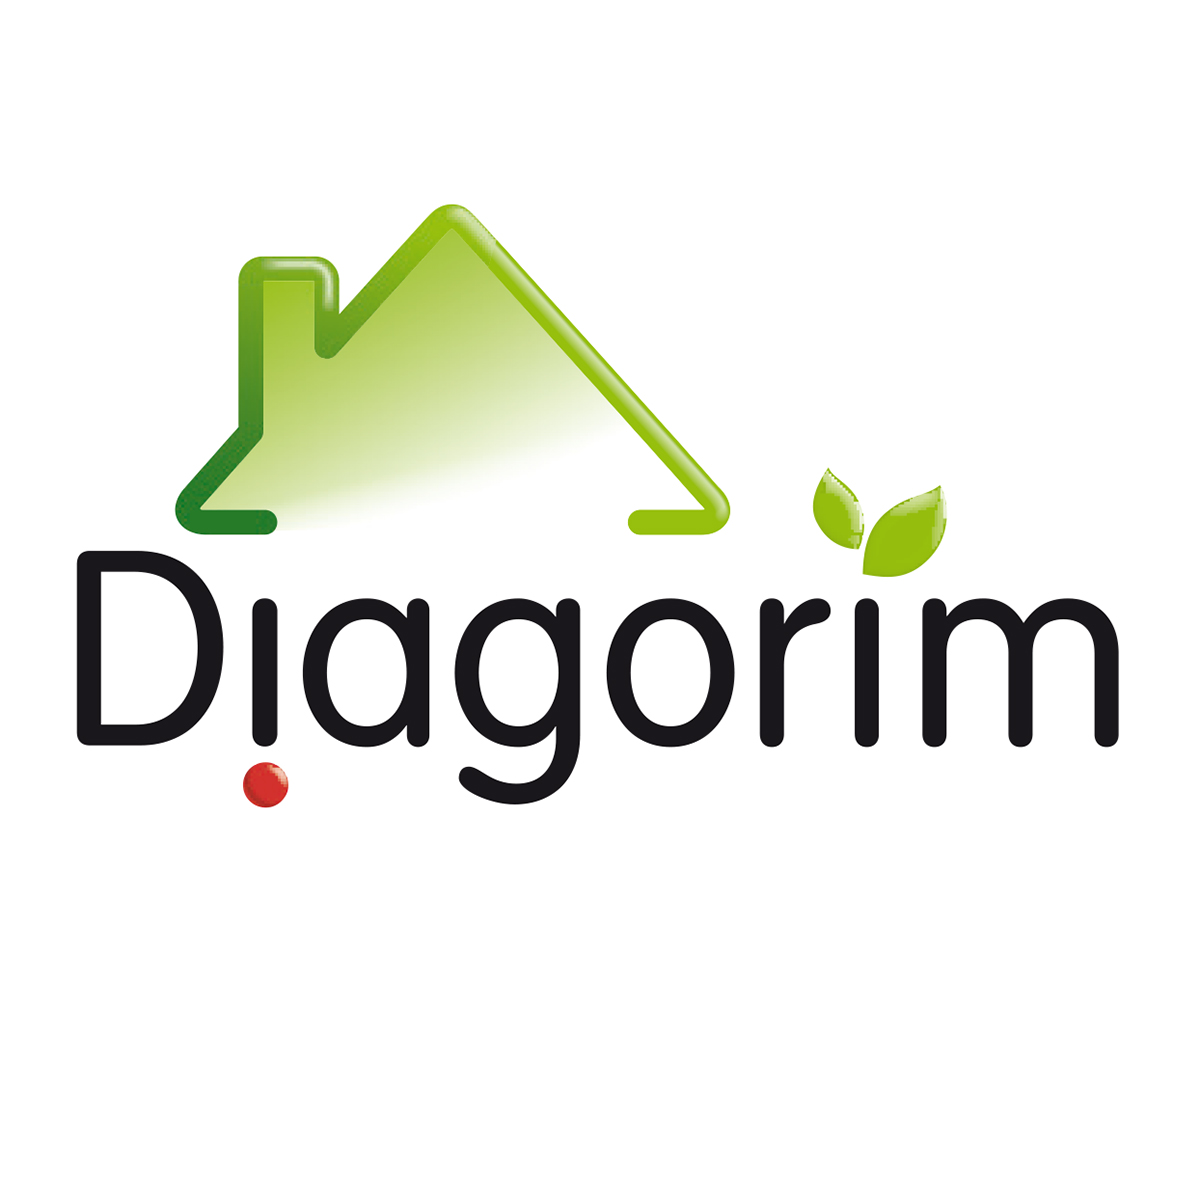 Diagorim - corporate logo